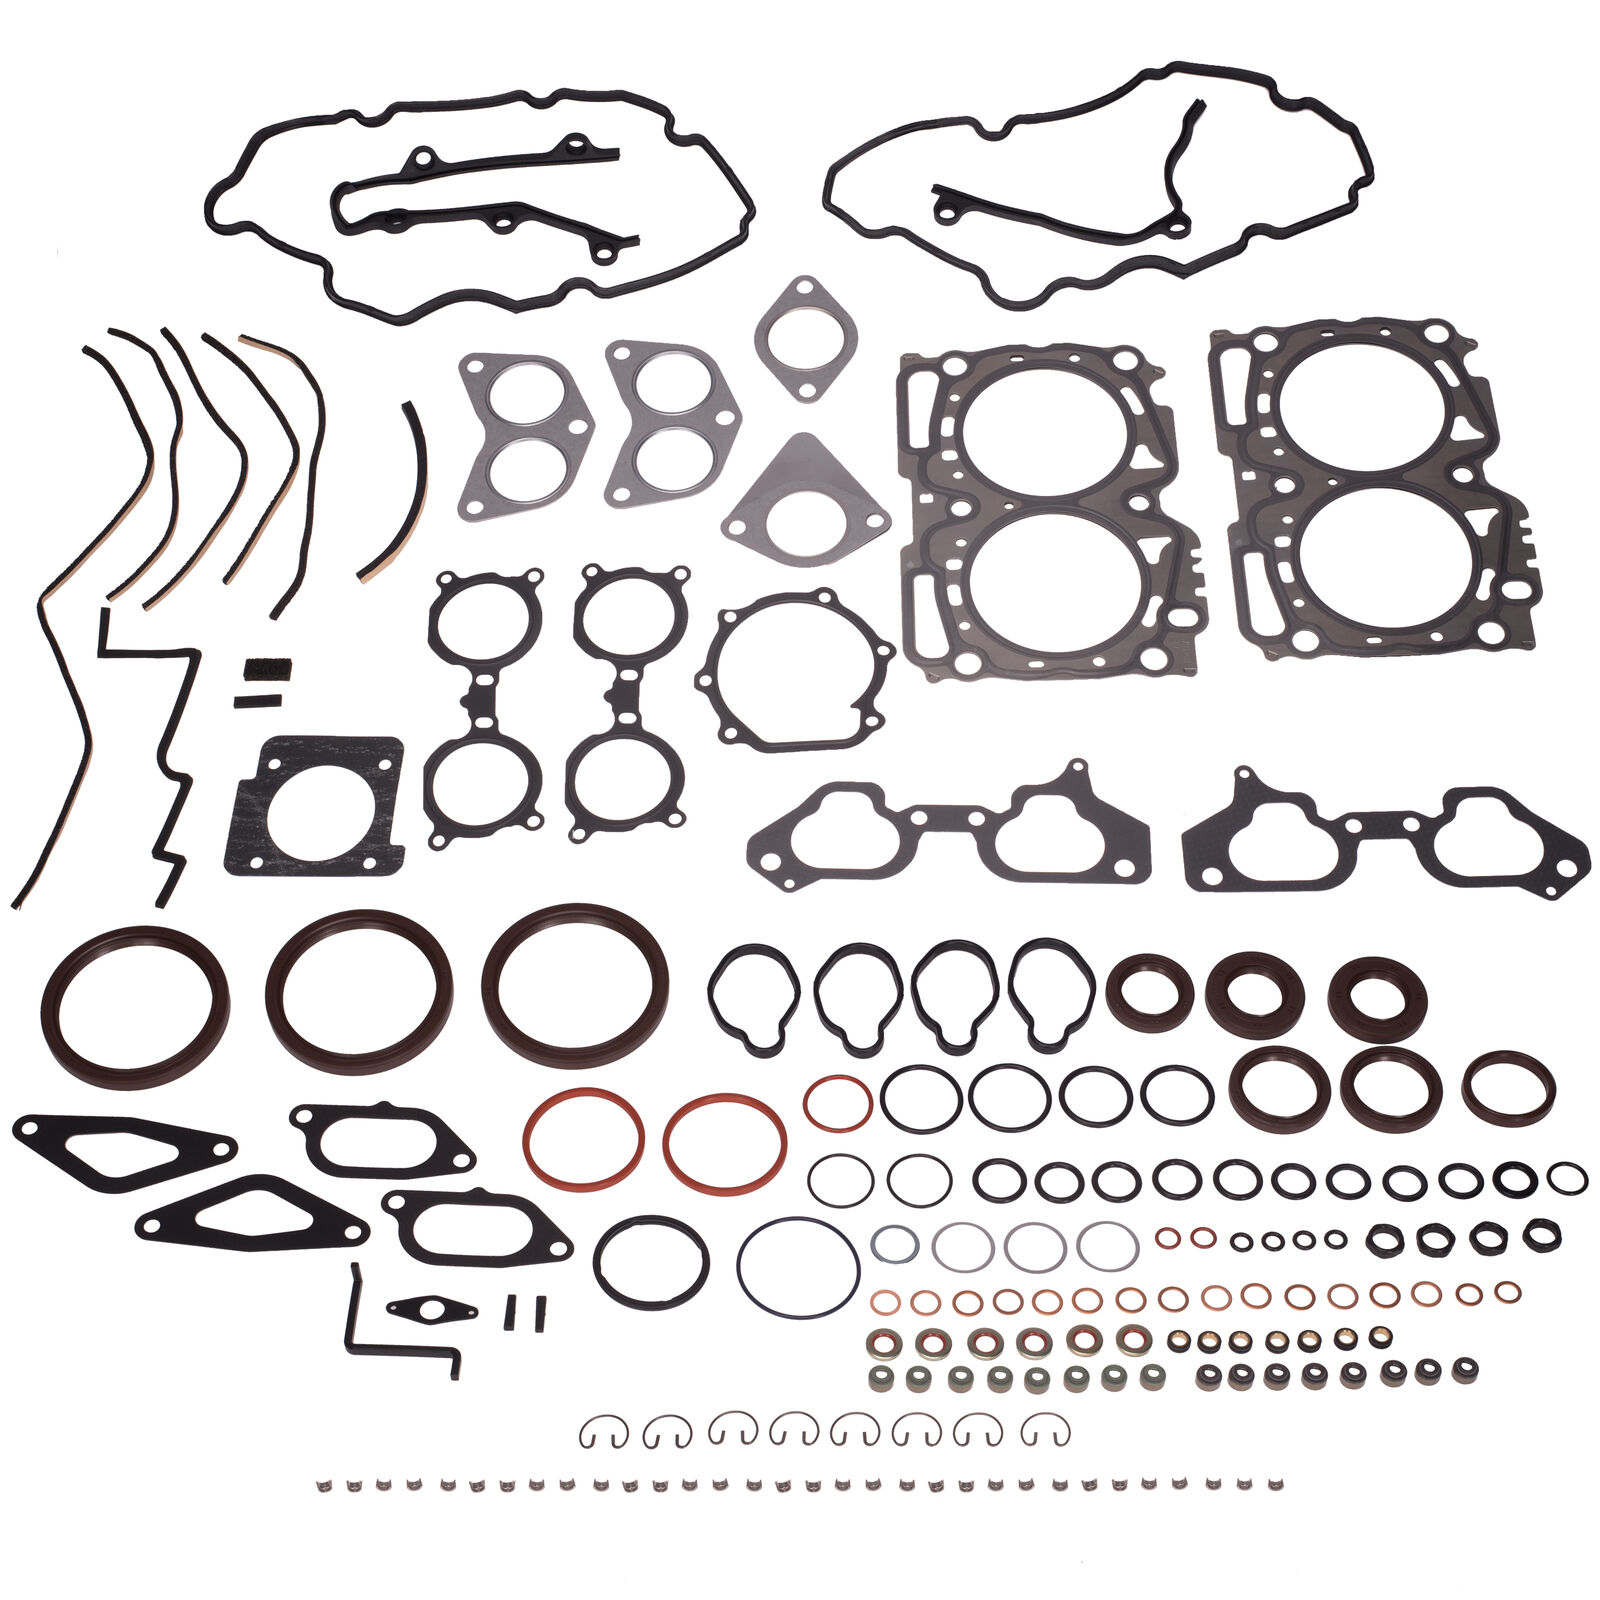 OEM 04-07 Subaru Impreza STI Complete Engine Gasket & Seal Kit EJ257 10105AA5909